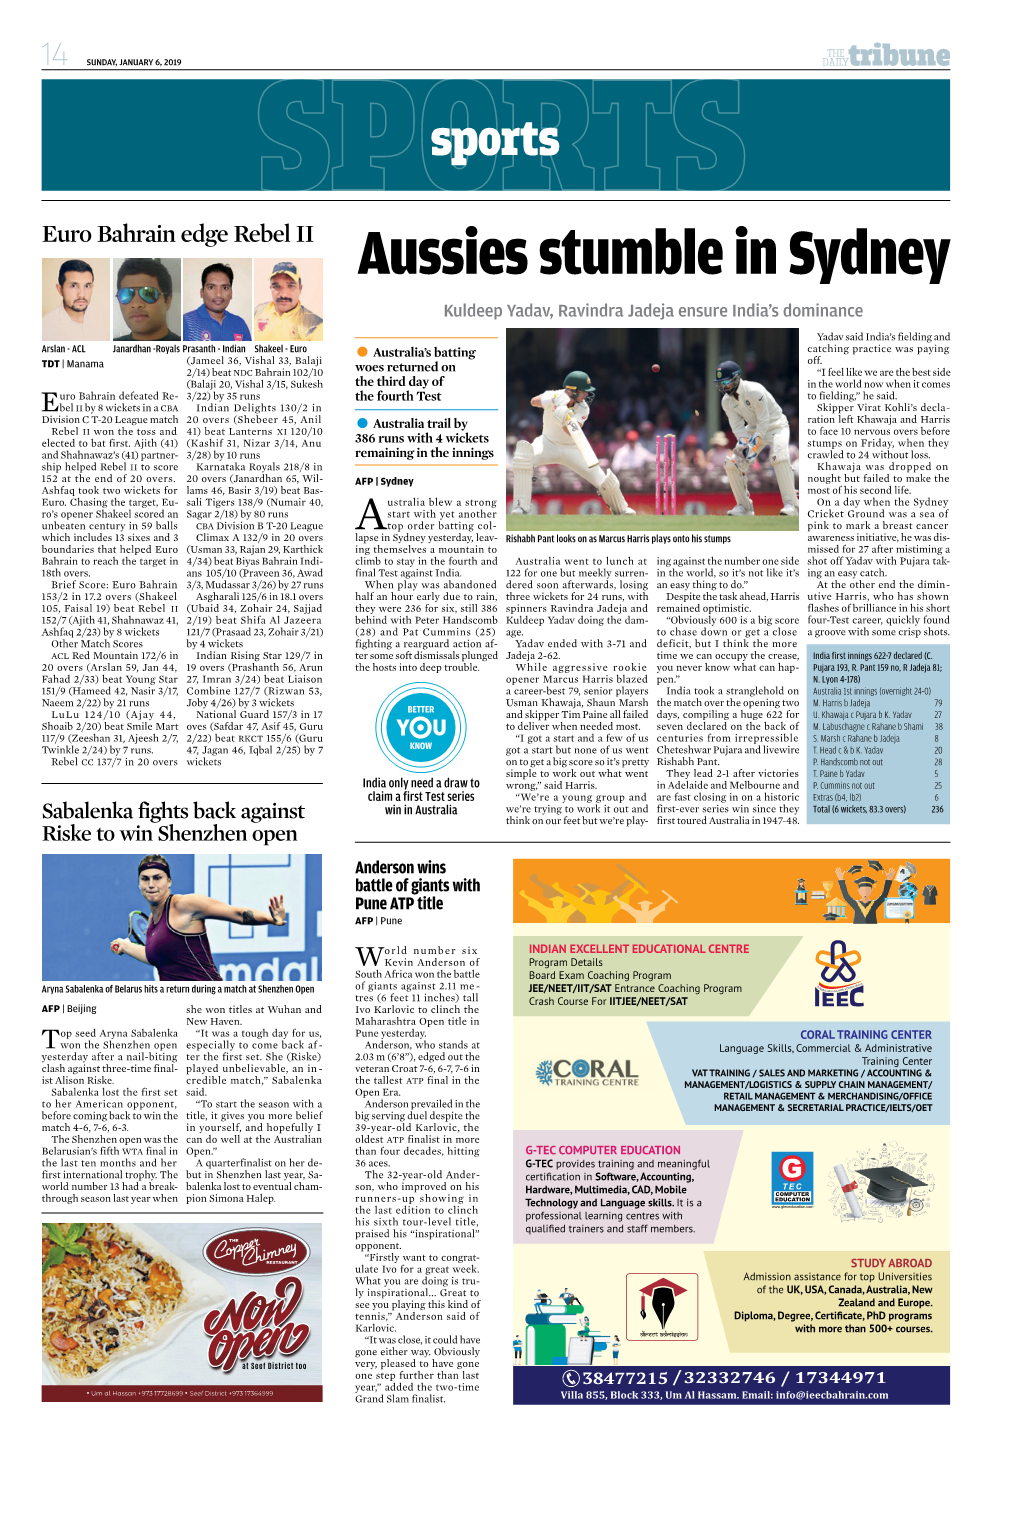 Aussies Stumble in Sydney Kuldeep Yadav, Ravindra Jadeja Ensure India’S Dominance